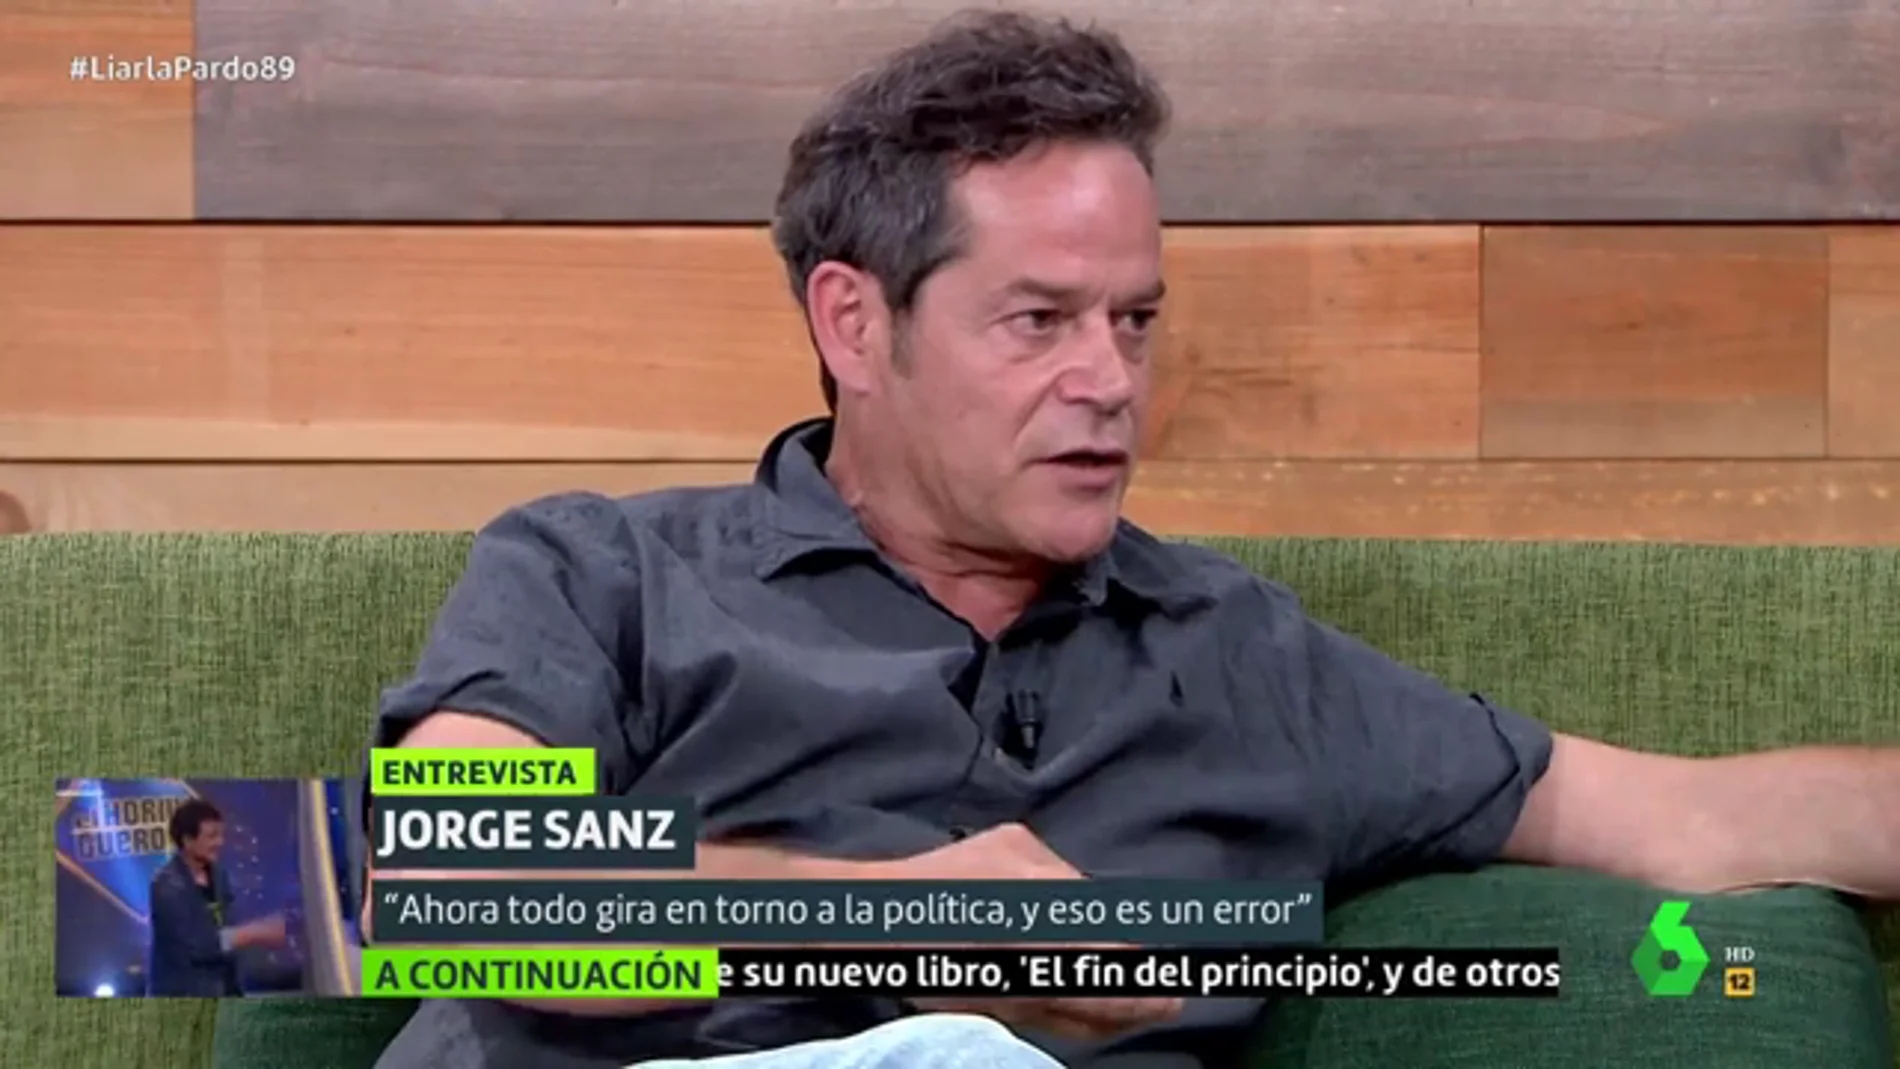 El alegato de Jorge Sanz a la concordia